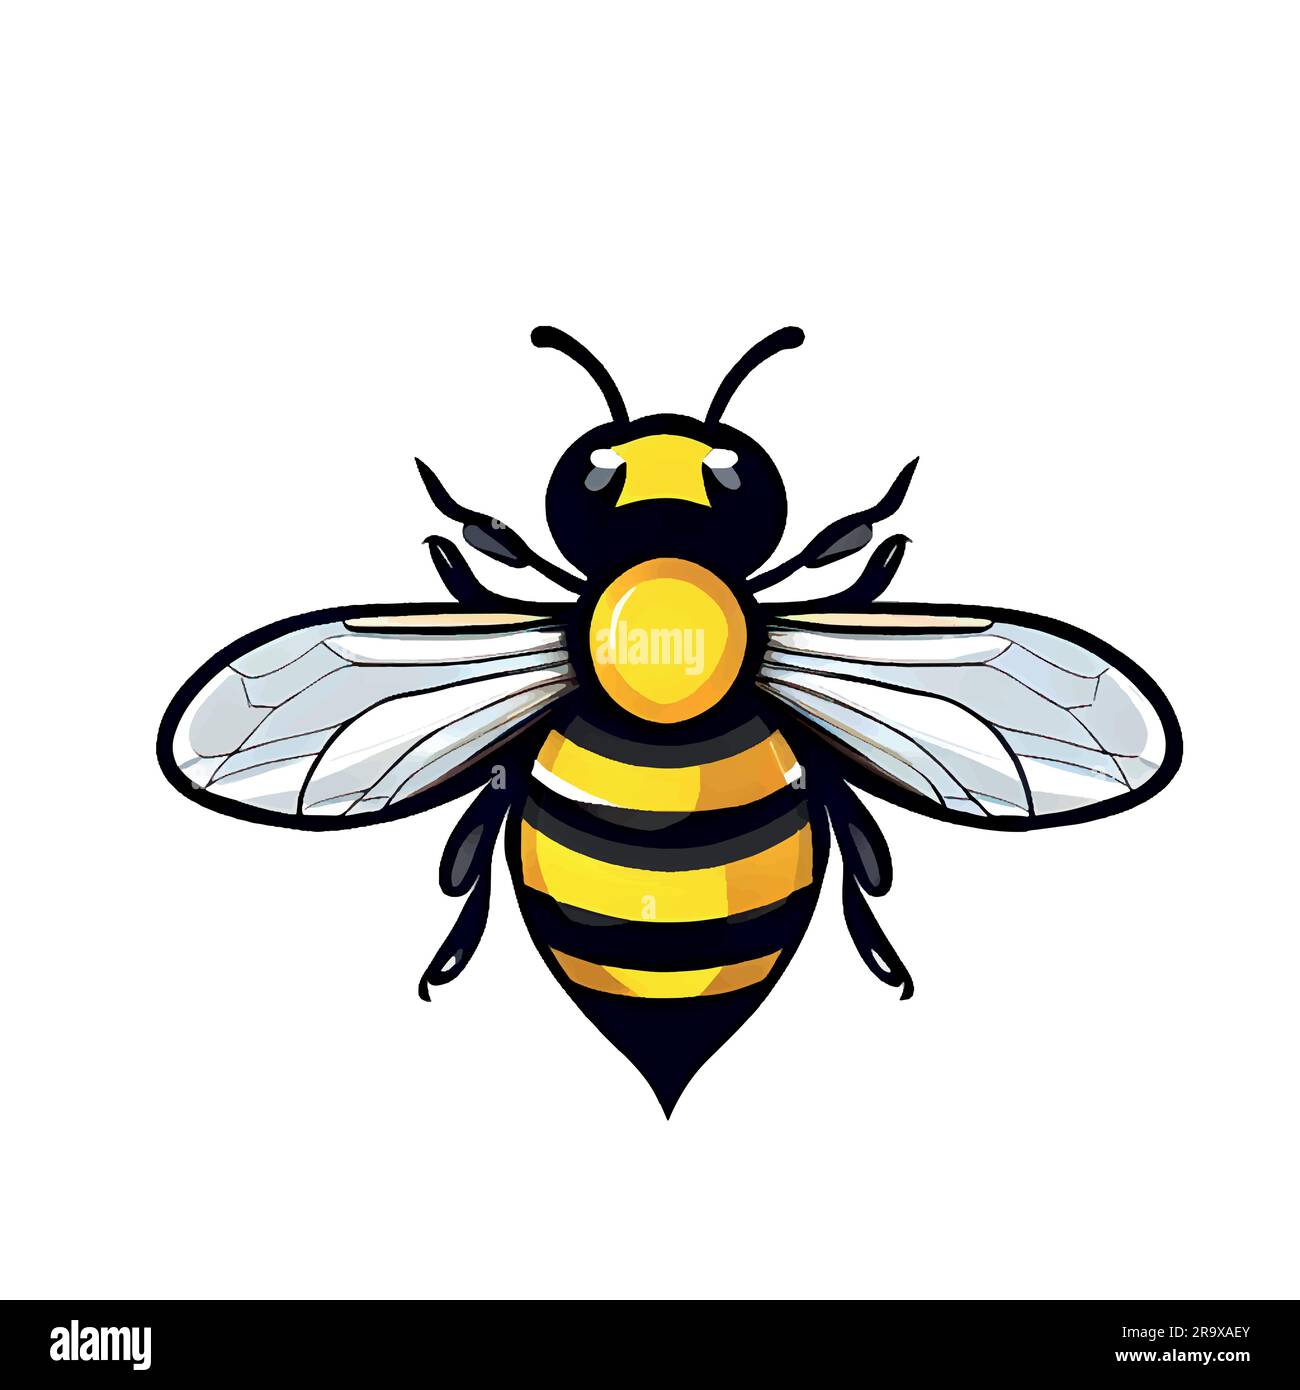 Bienenmotiv, Bienenlogo auf weißem Hintergrund. Biene auf weißem Hintergrund. Vektordarstellung einer Biene auf weißem Hintergrund. Stock Vektor